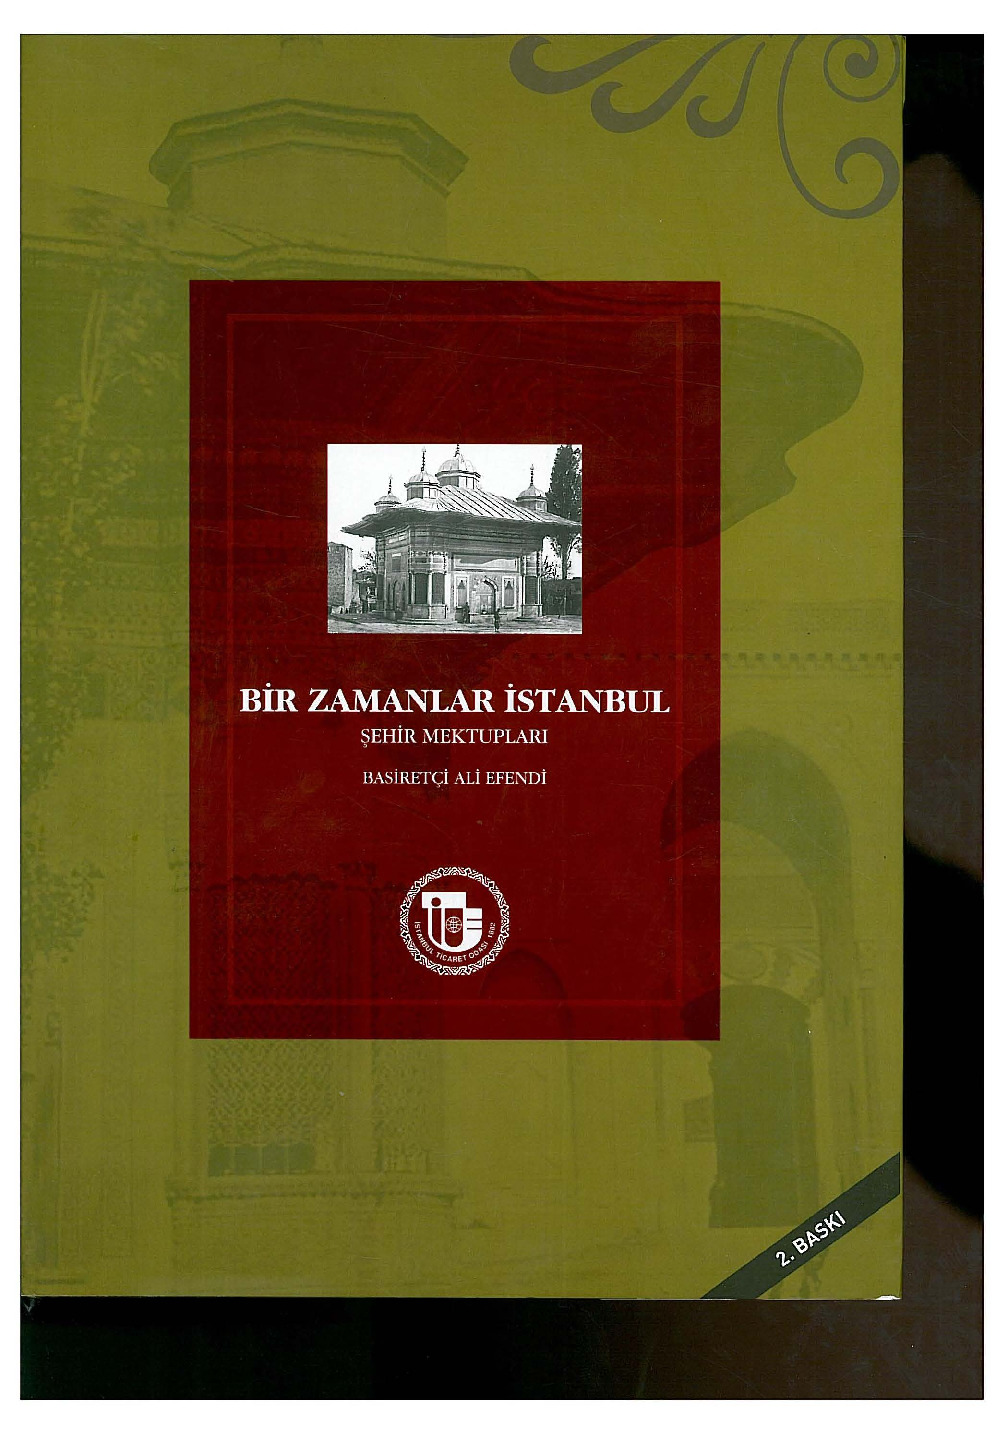 Bir Zamanlar İstanbul Şehir Mektubları -Besiretçi Ali Efendi 185